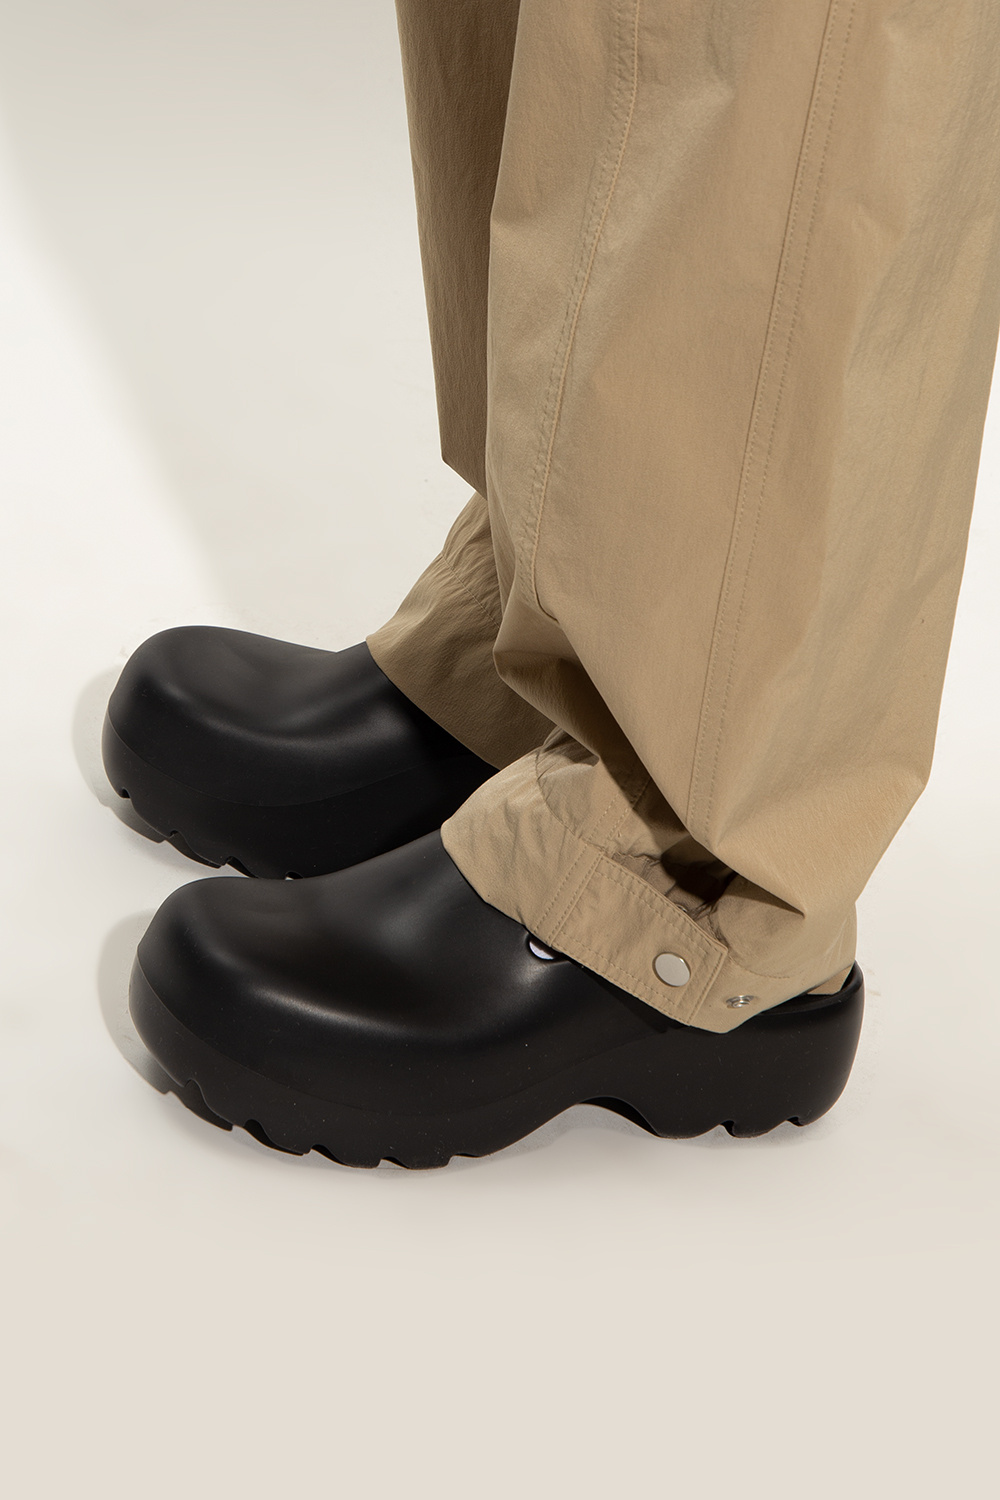 Bottega Veneta ‘Flash’ rubber slides | Men's Shoes | Vitkac